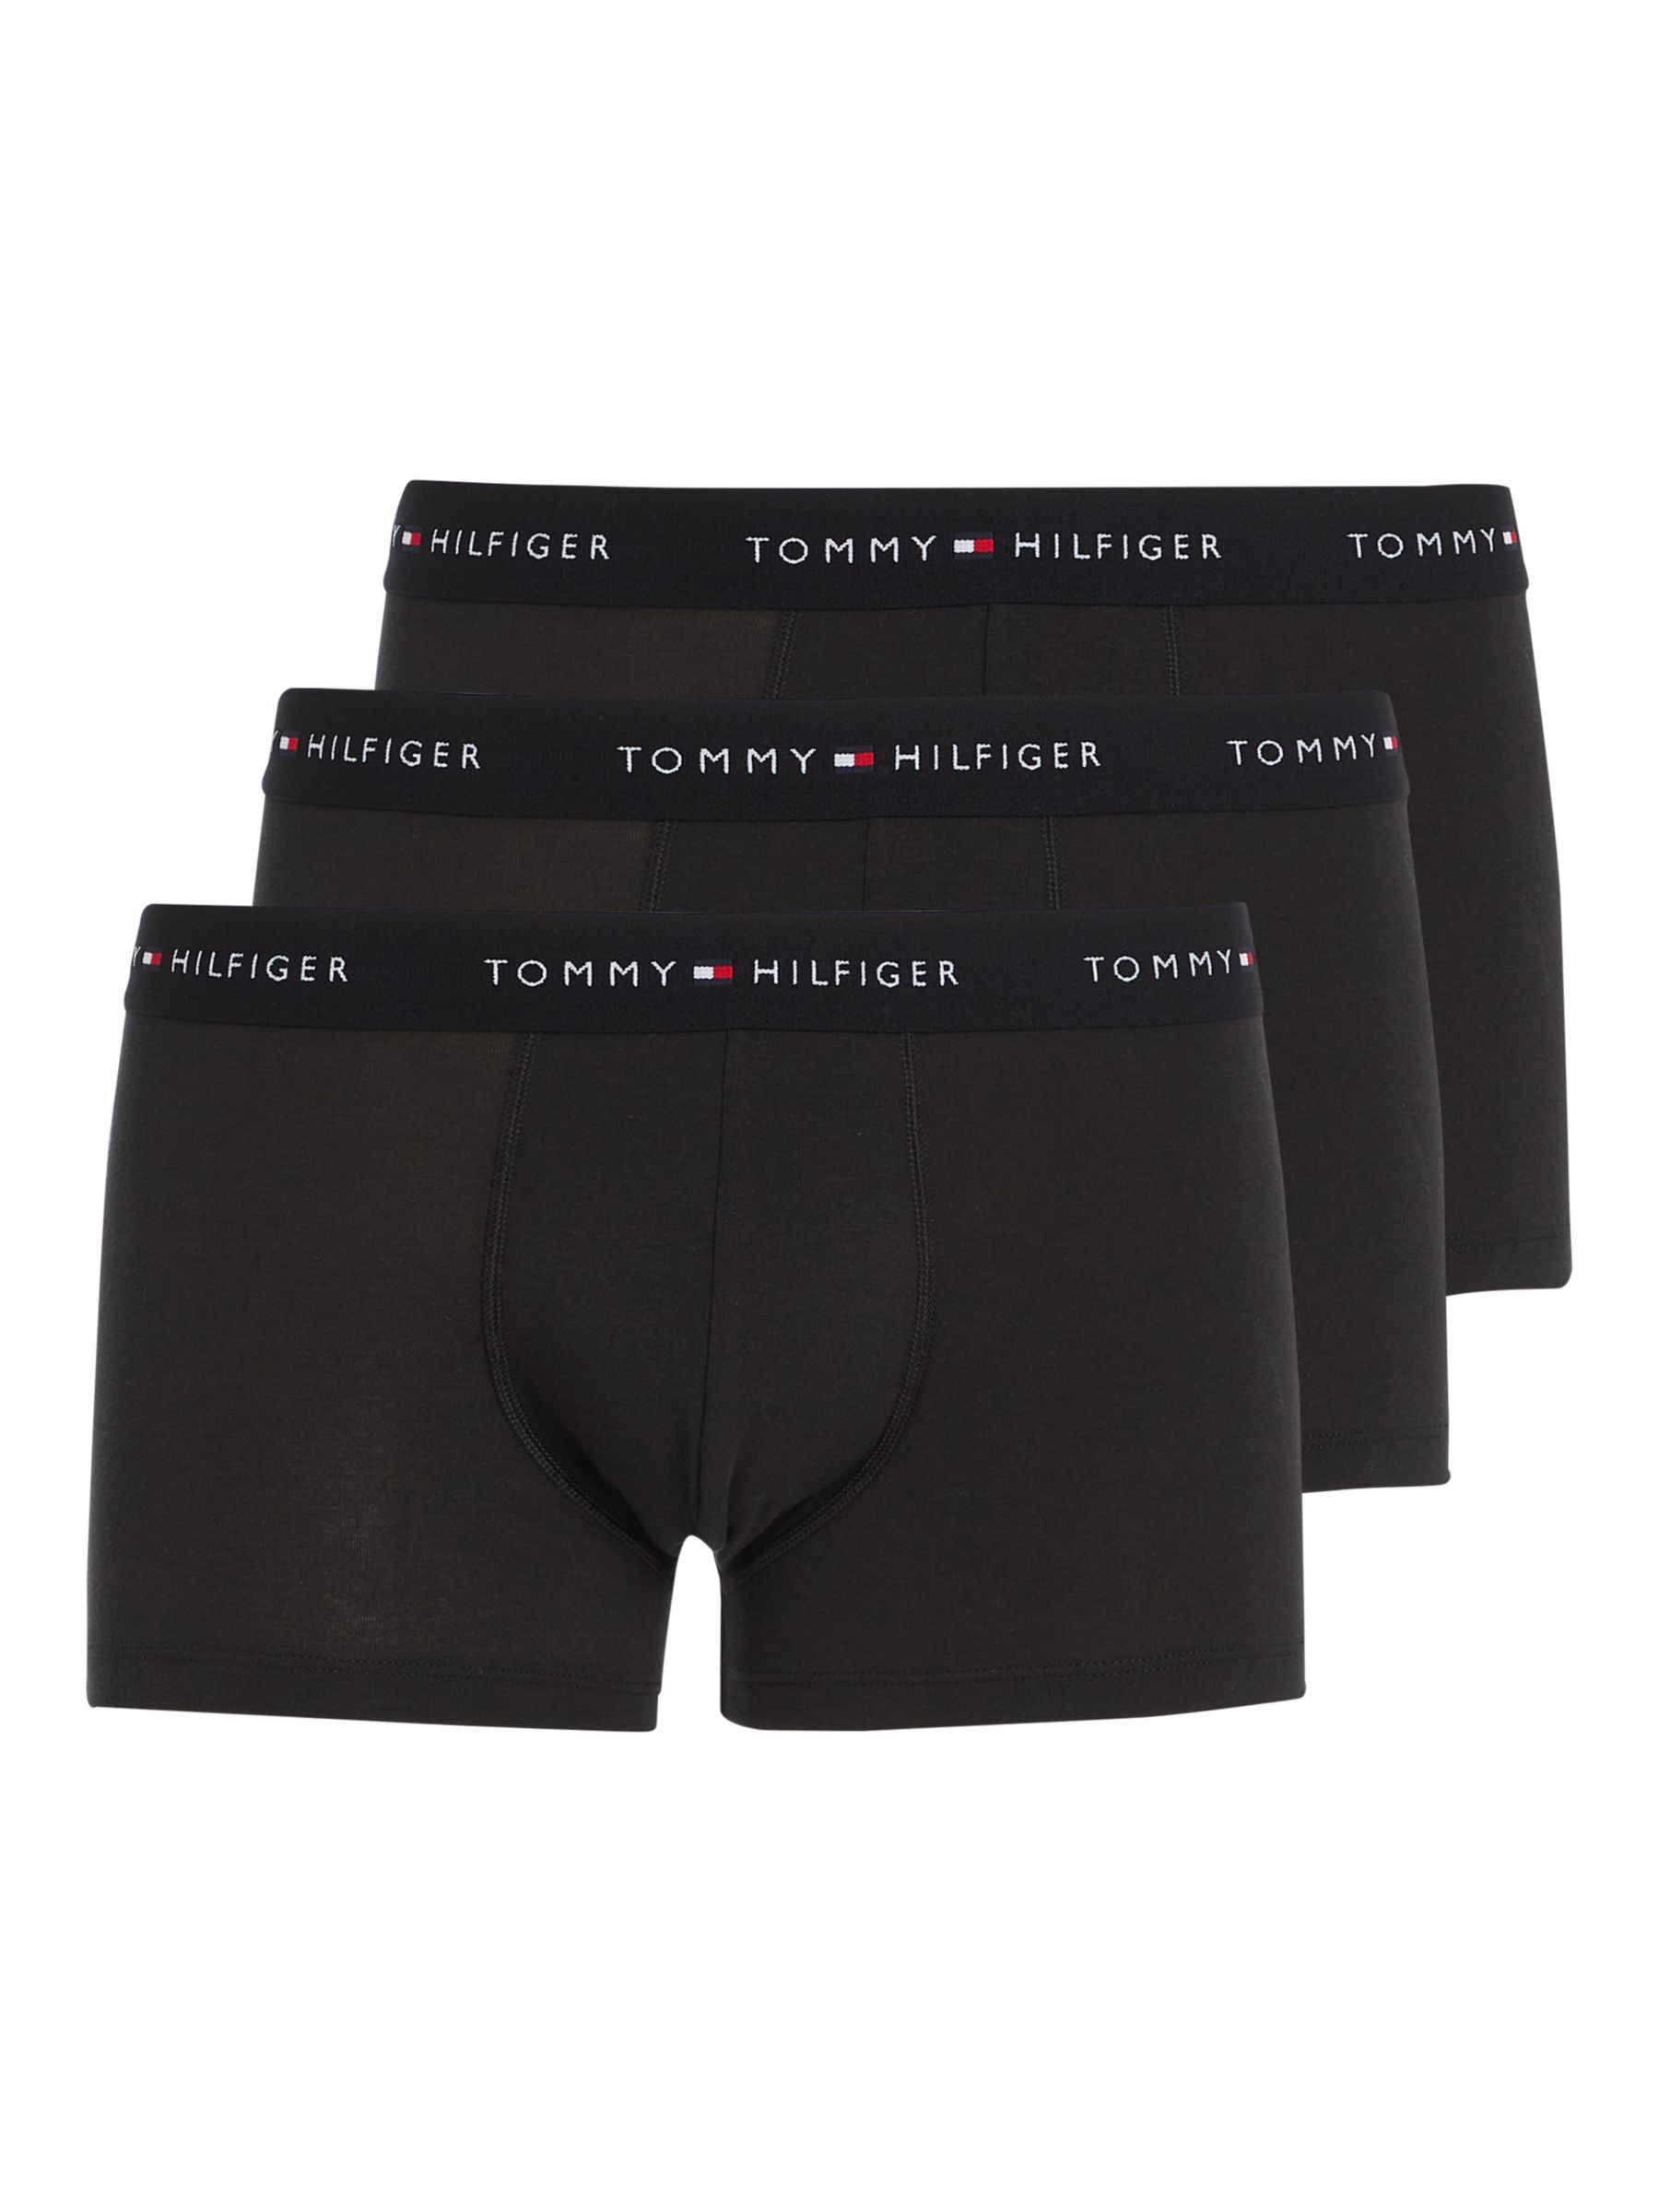 Tommy Hilfiger Essential Cotton Logo Trunks, Pack of 3, Black, L